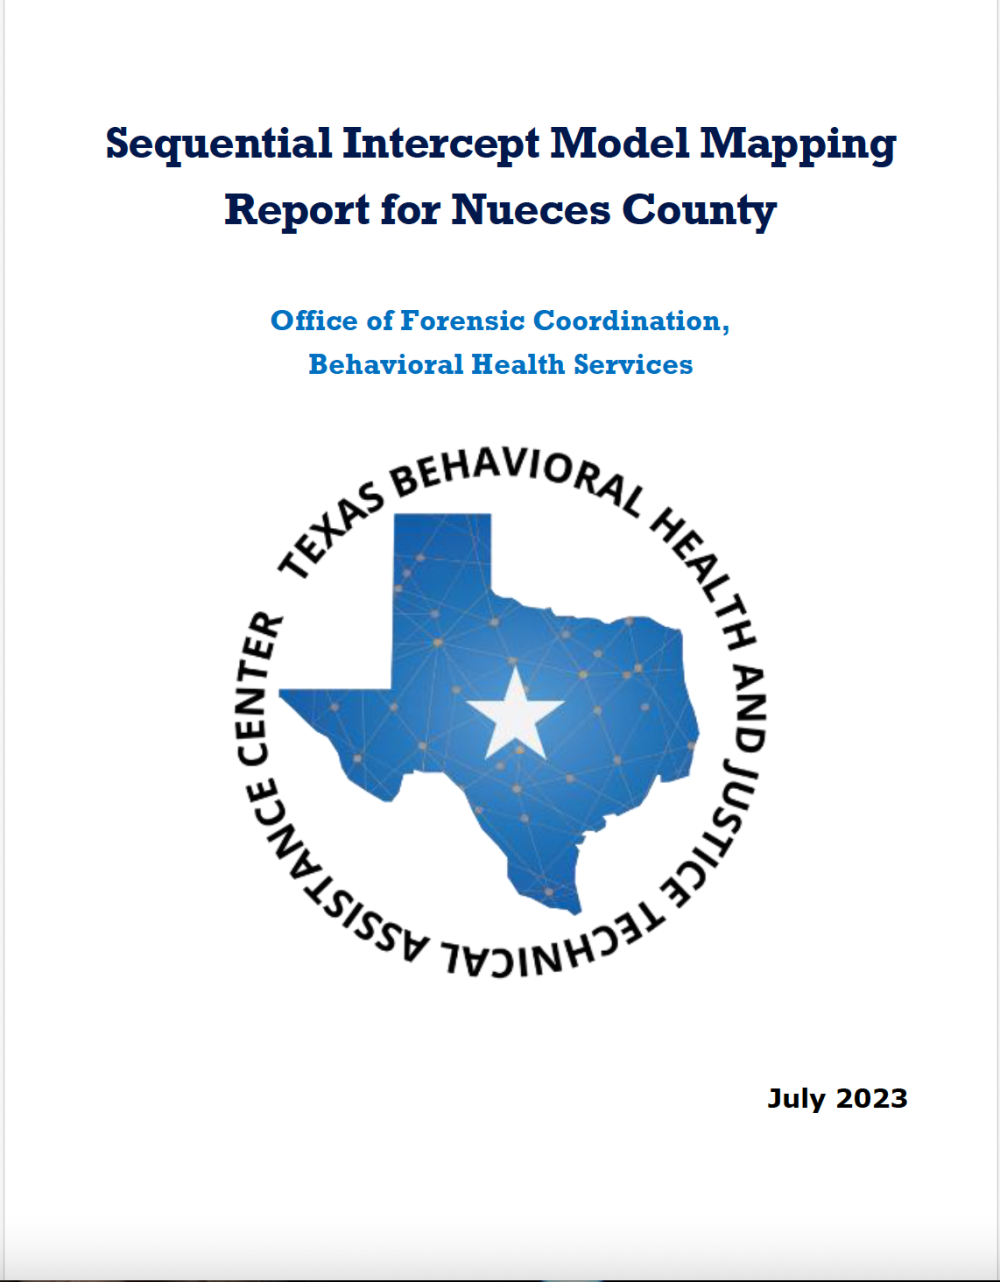 Nueces County SIM Report